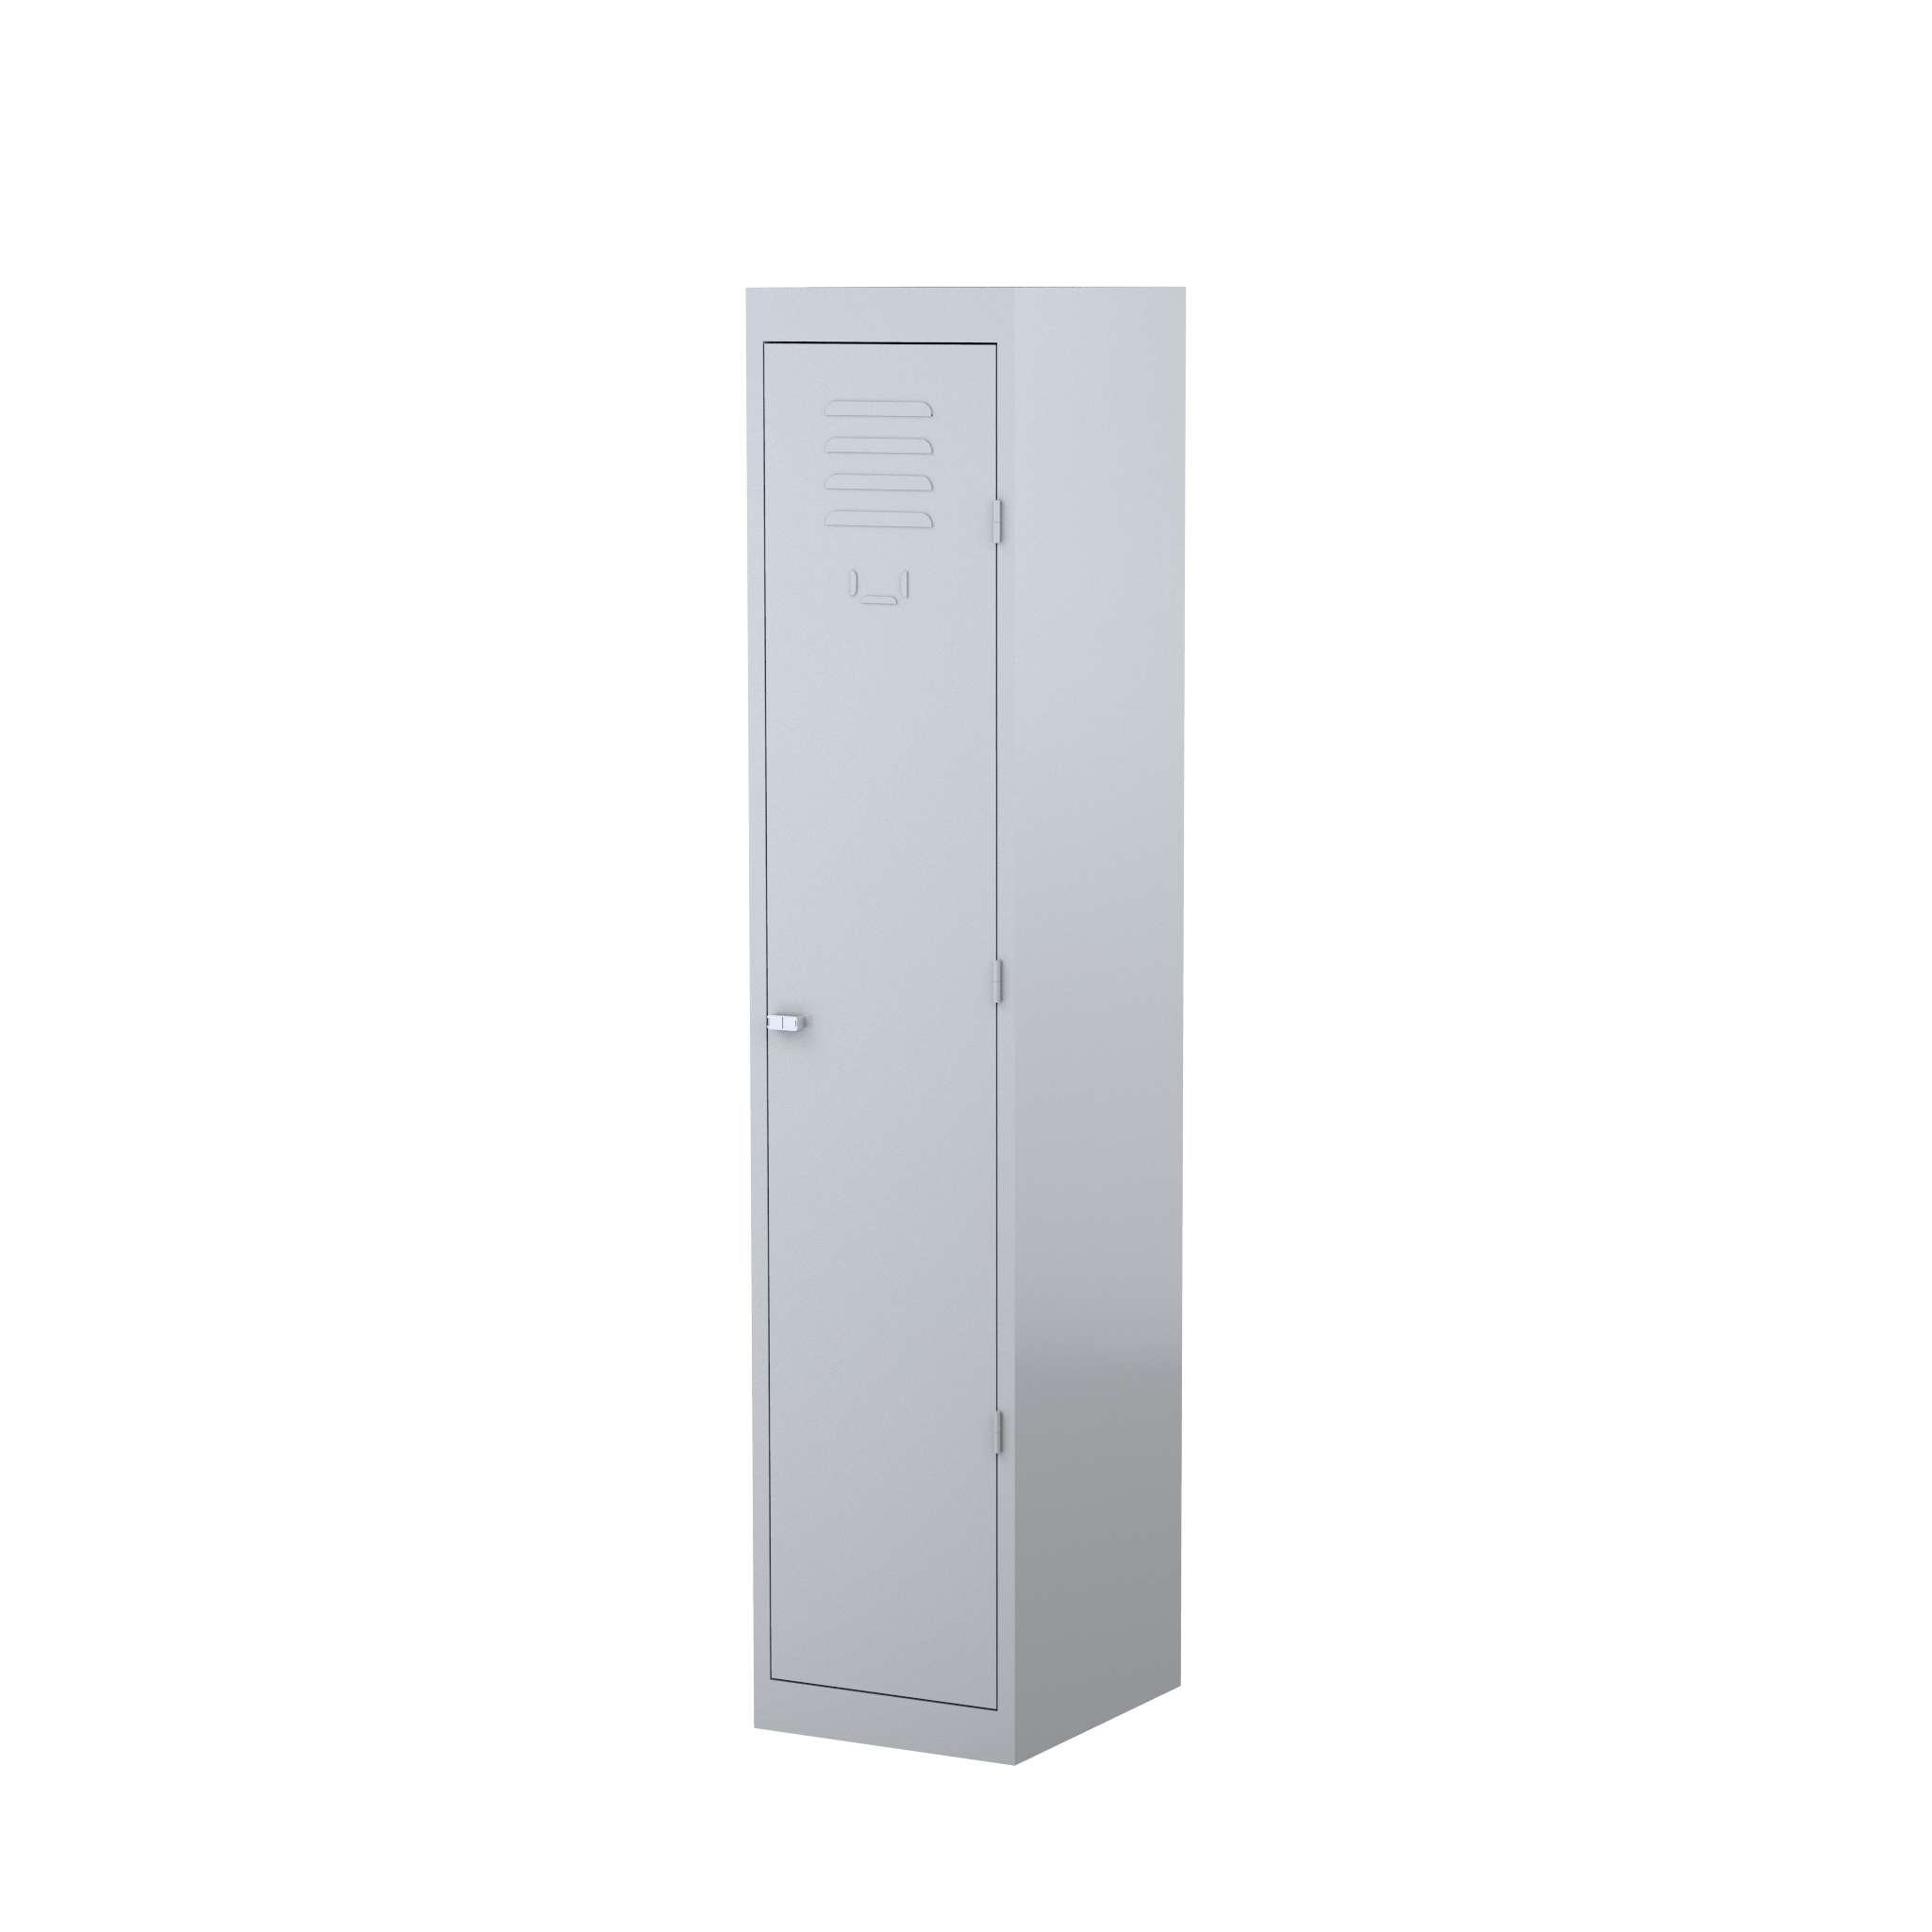 LK1T380 - STEELCO 1 Door Locker - 1830H x 380W x 460D-SG.png